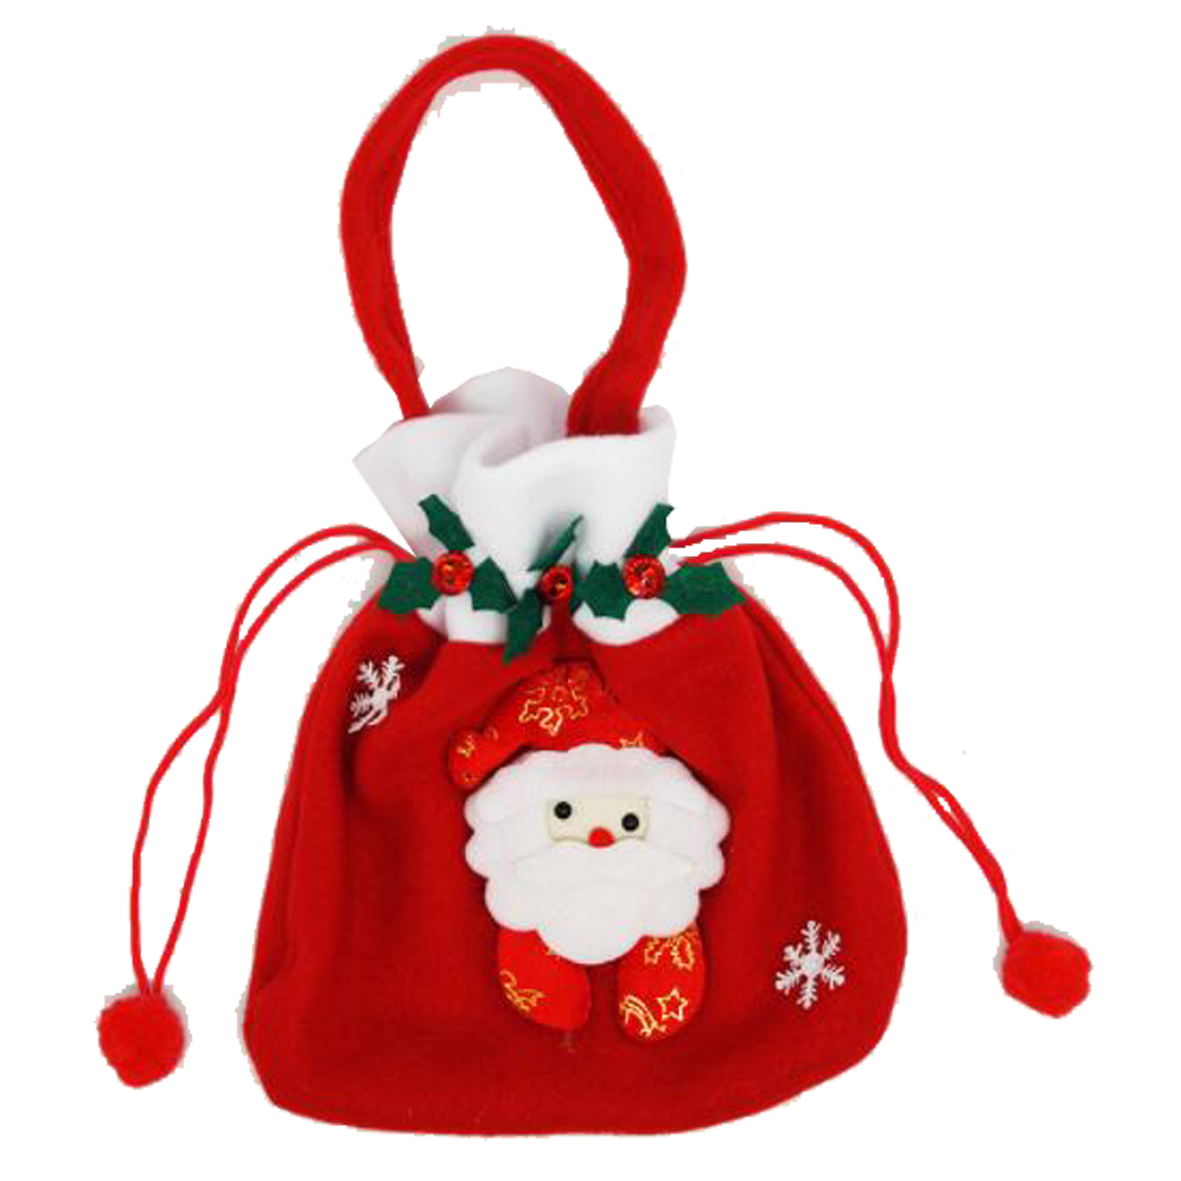 GL-AAA1271 Drawstring Bag for Christmas